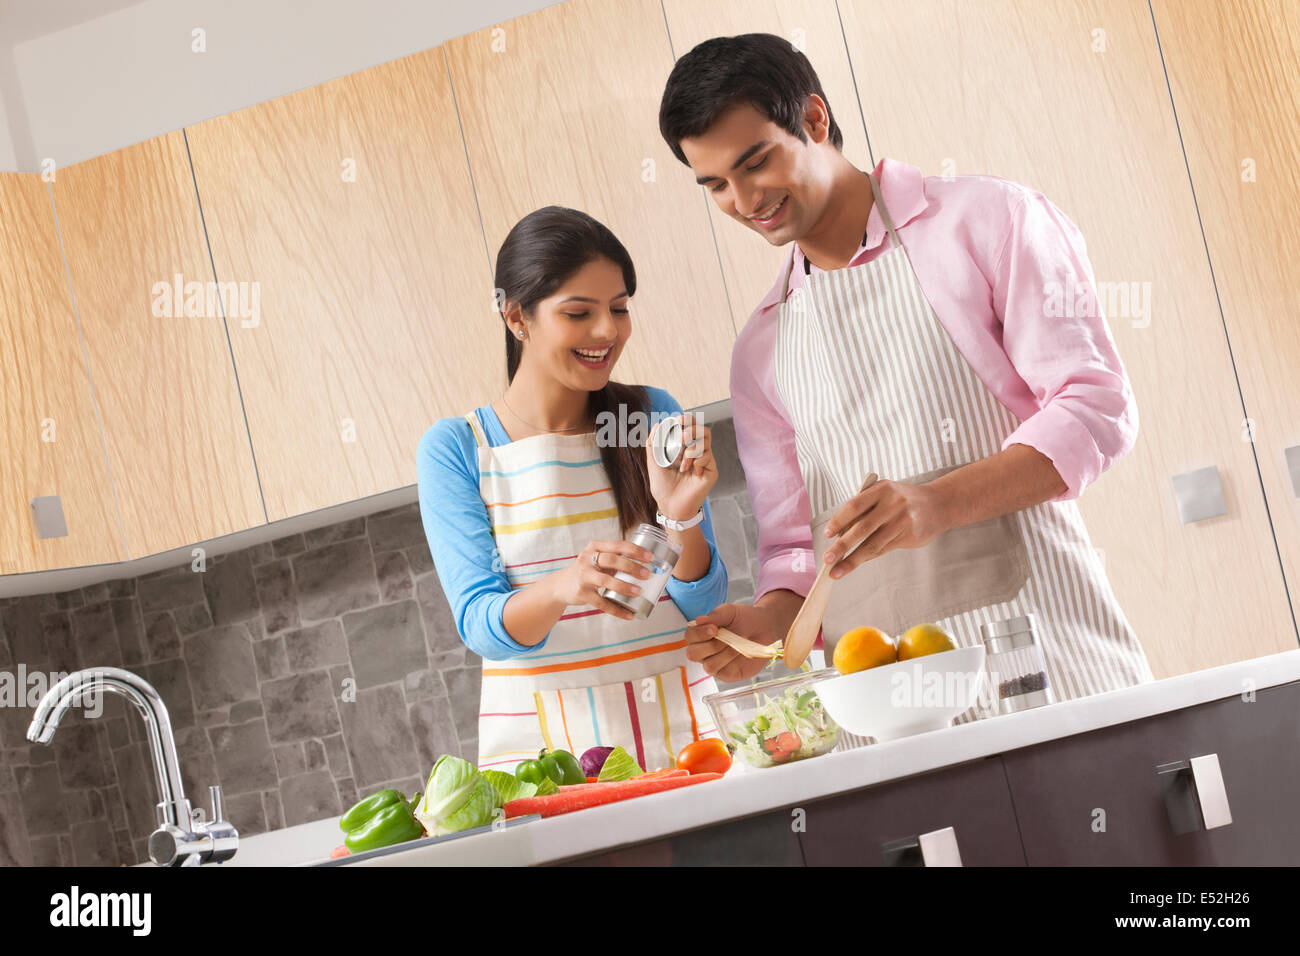 Lächelnd junges Paar bereitet frischen Salat in Küche Stockfoto